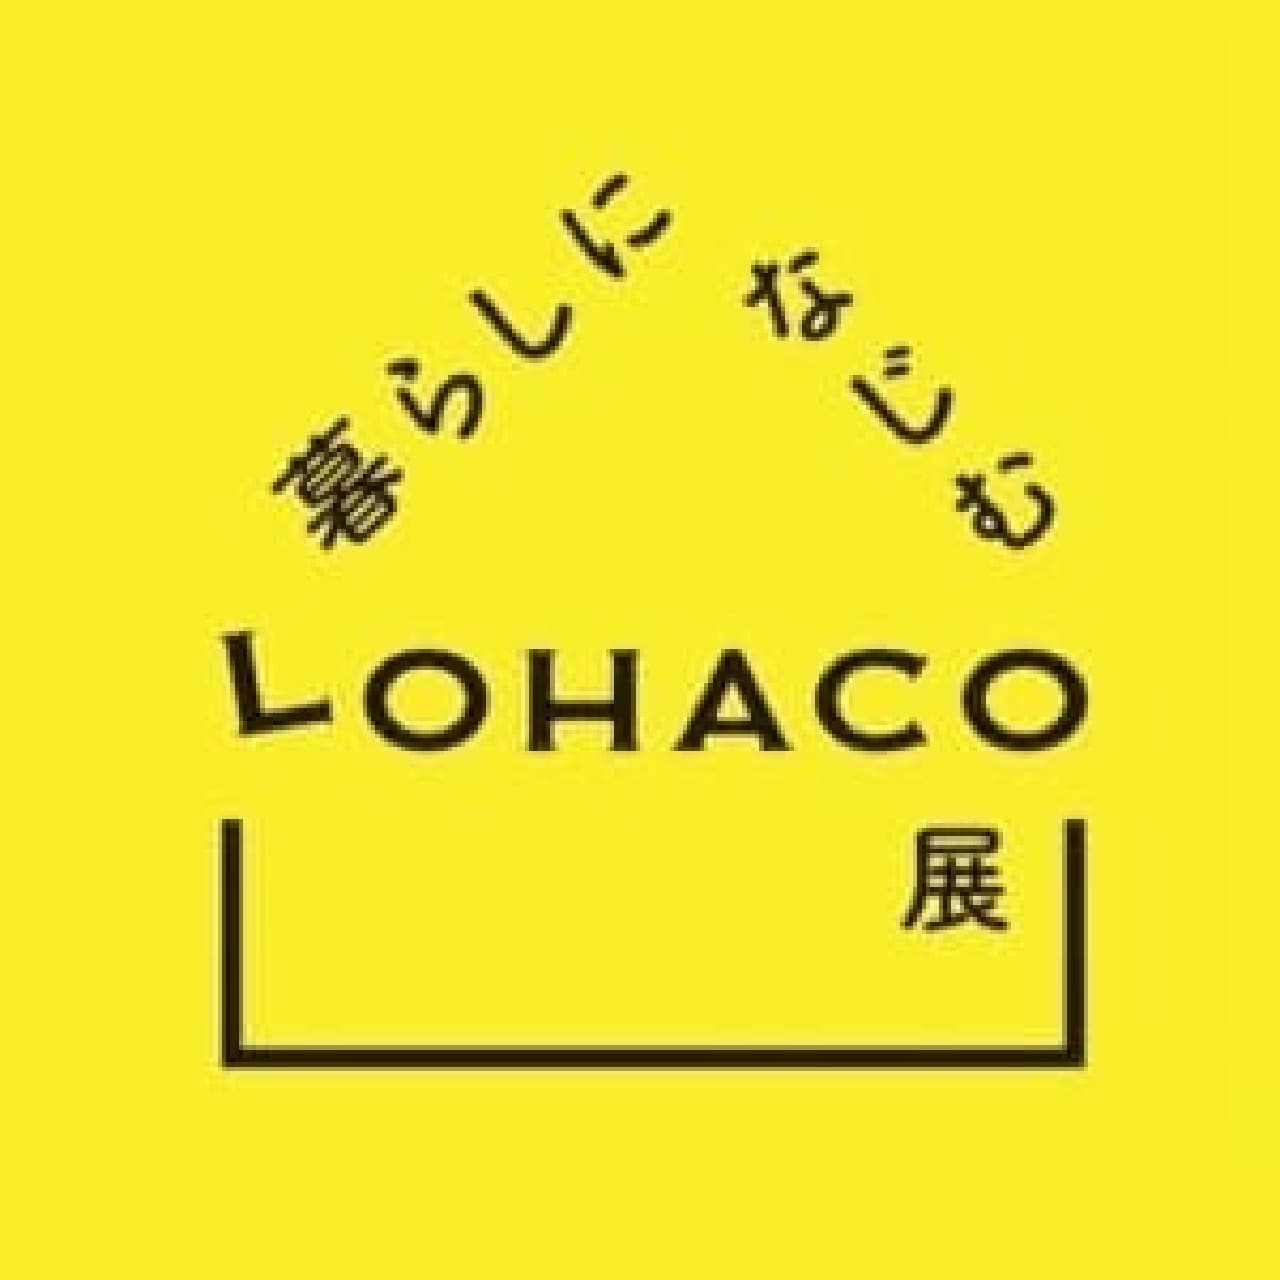 LOHACO Exhibition 2016